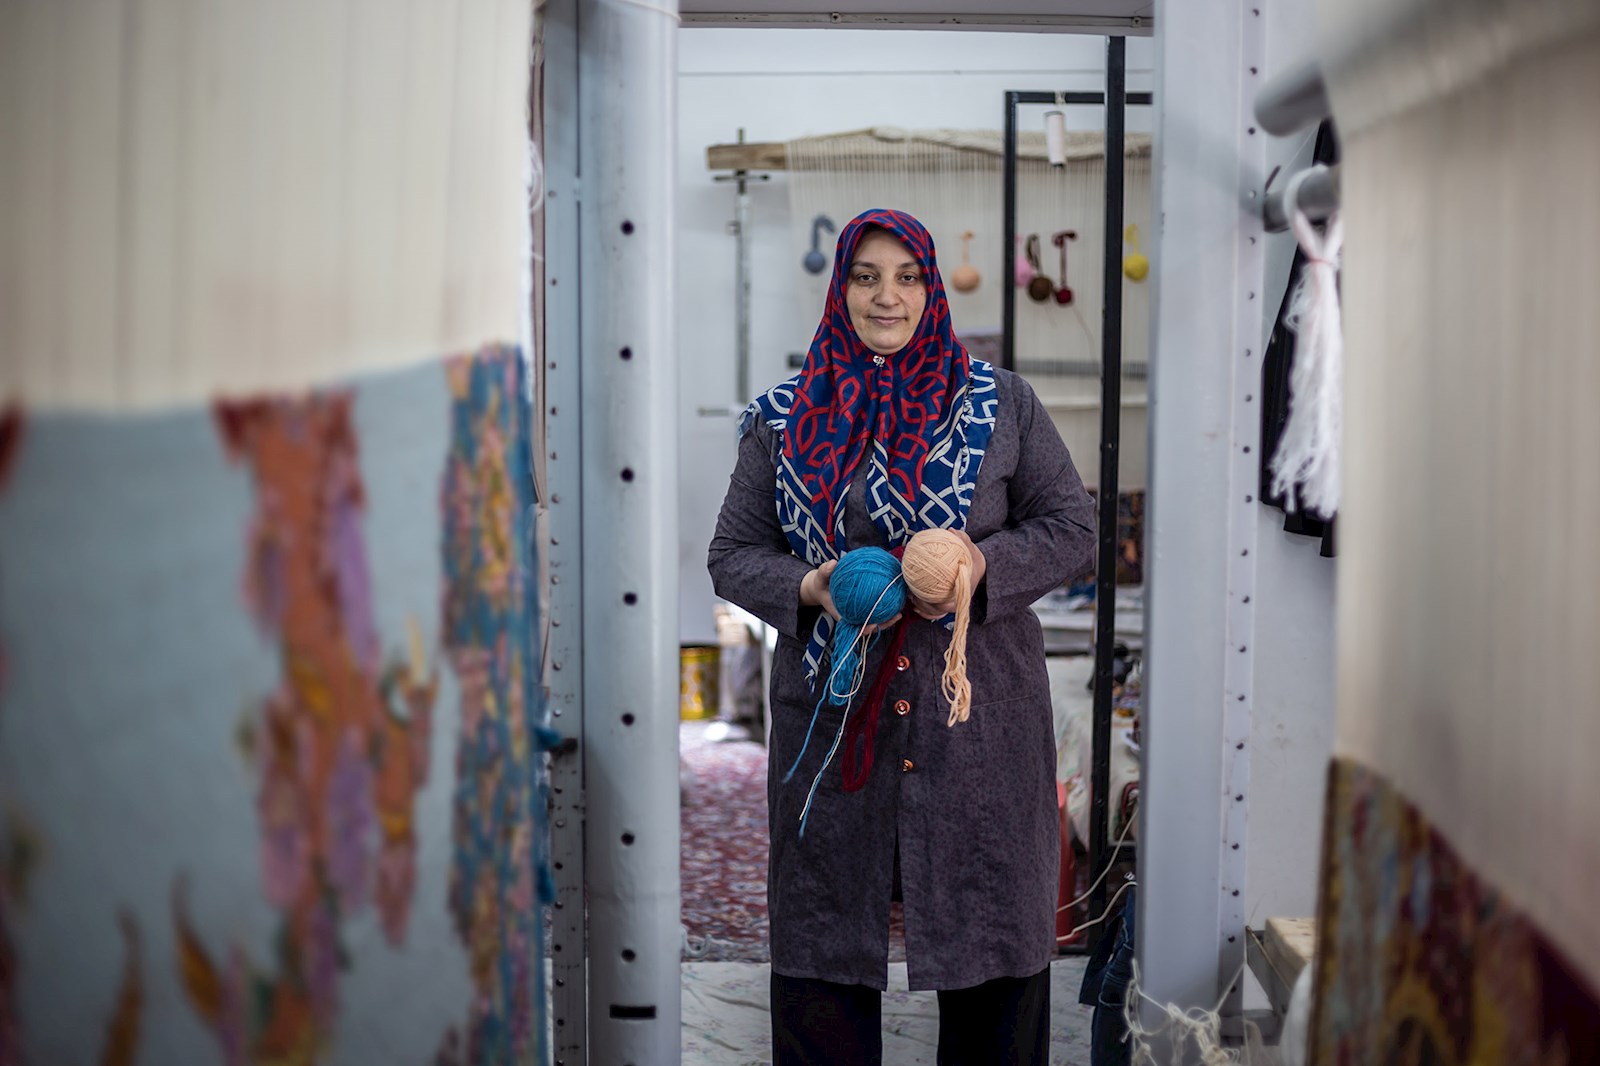 لیلا رحیمی مادرو هنرمندی است که در شهر کوچک تودشک در شرق اصفهان زندگی می کند. زمانی که تودشک به رکود اقتصادی خورد، تصمیم گرفت صنعت قالیبافی اش را در منطقه به راه اندازد.